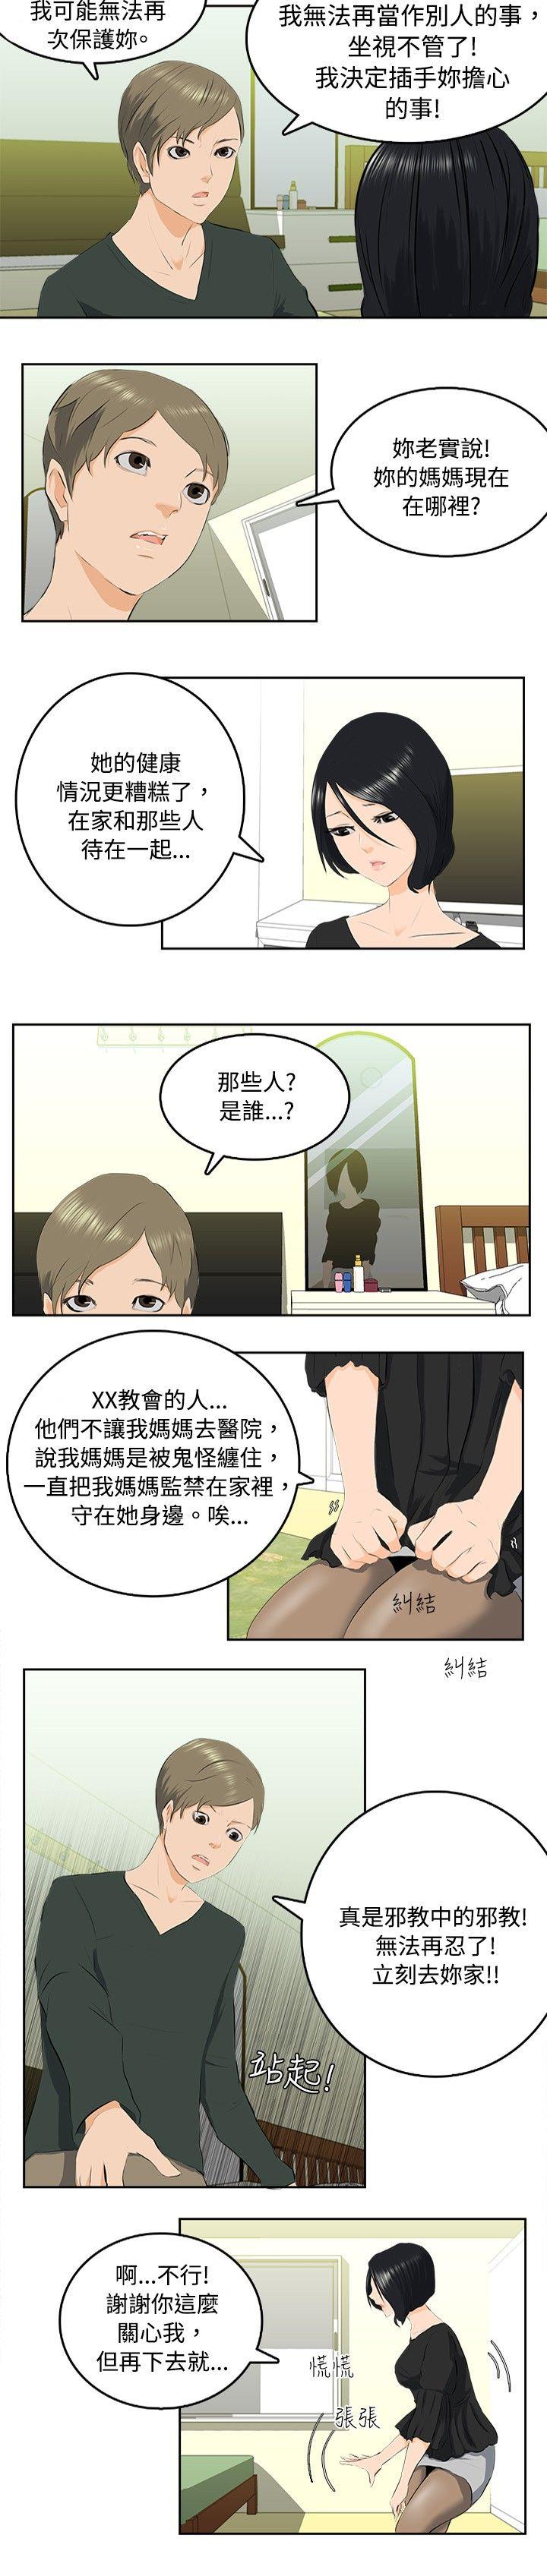 秘密Story  邪教之女(中) 漫画图片6.jpg